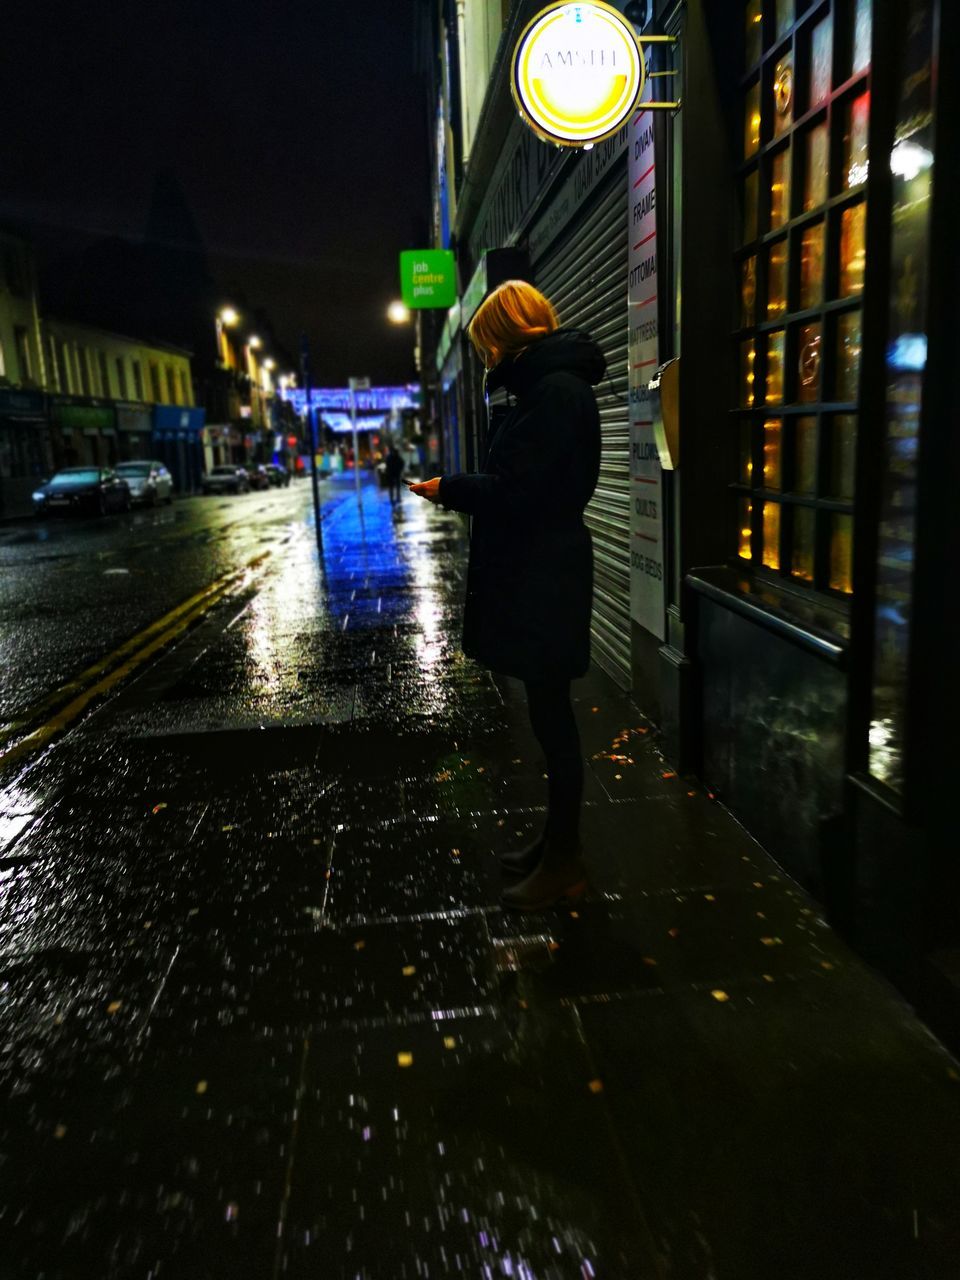 WOMAN WALKING ON WET STREET IN ILLUMINATED CITY